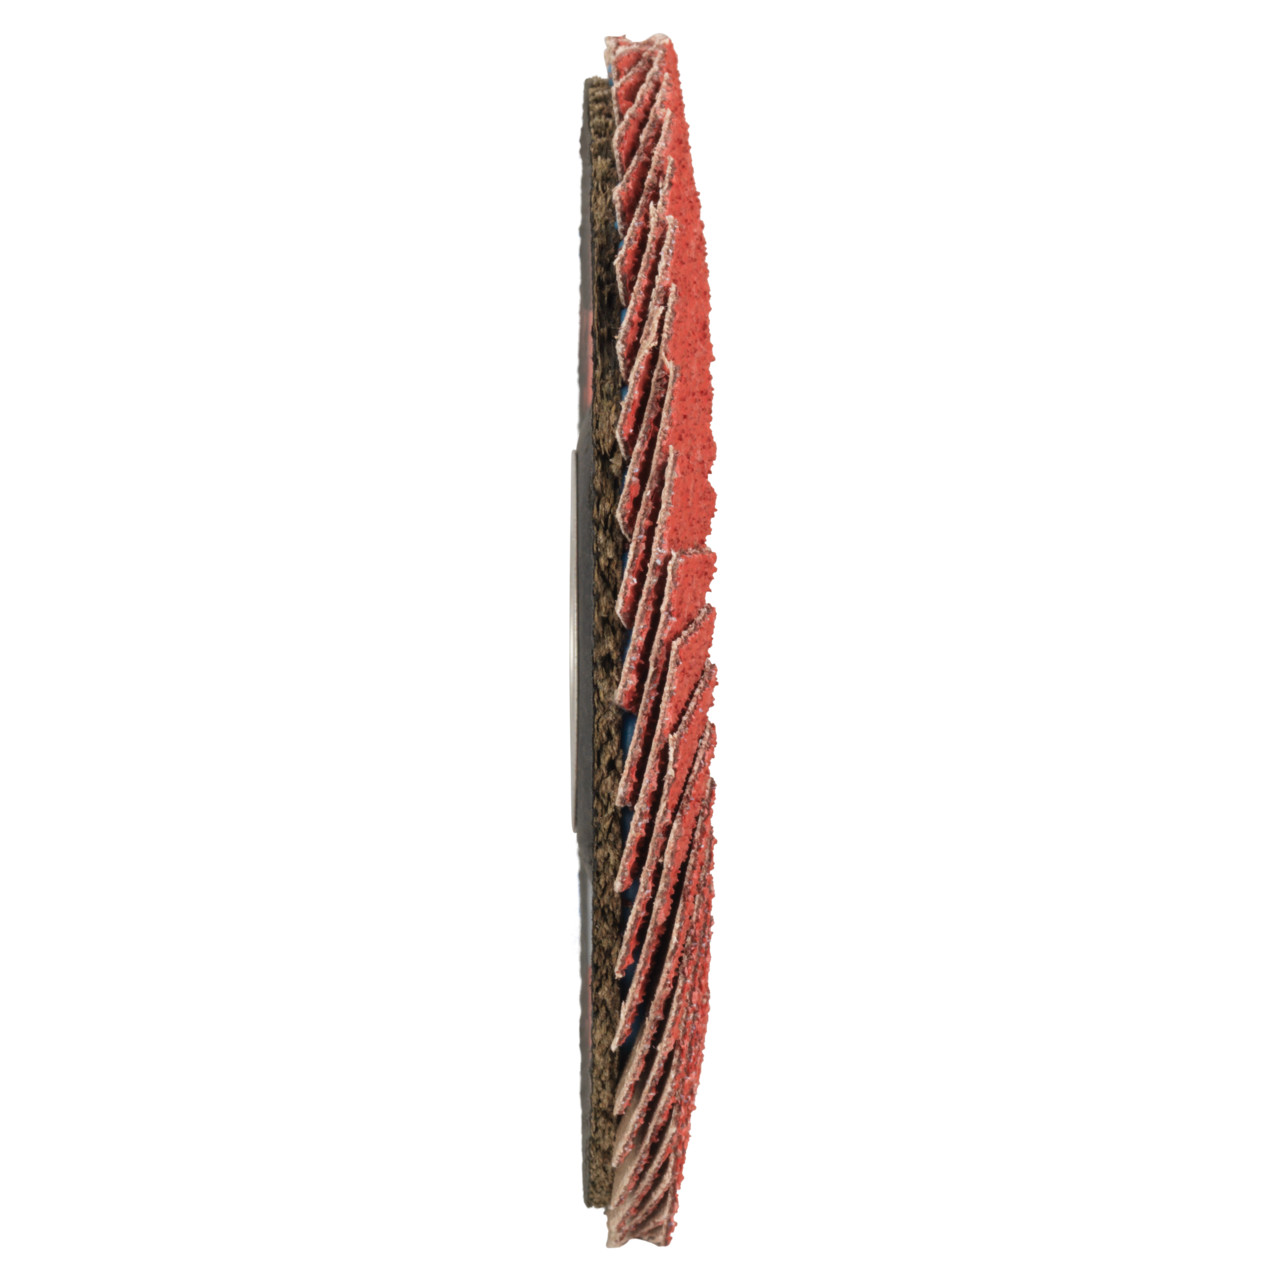 Tyrolit Gekartelde borgring DxH 178x22,23 CERAMIC voor roestvrij staal, P80, vorm: 27A - slingerontwerp (glasvezeldragerhuisontwerp), Art. 34166686